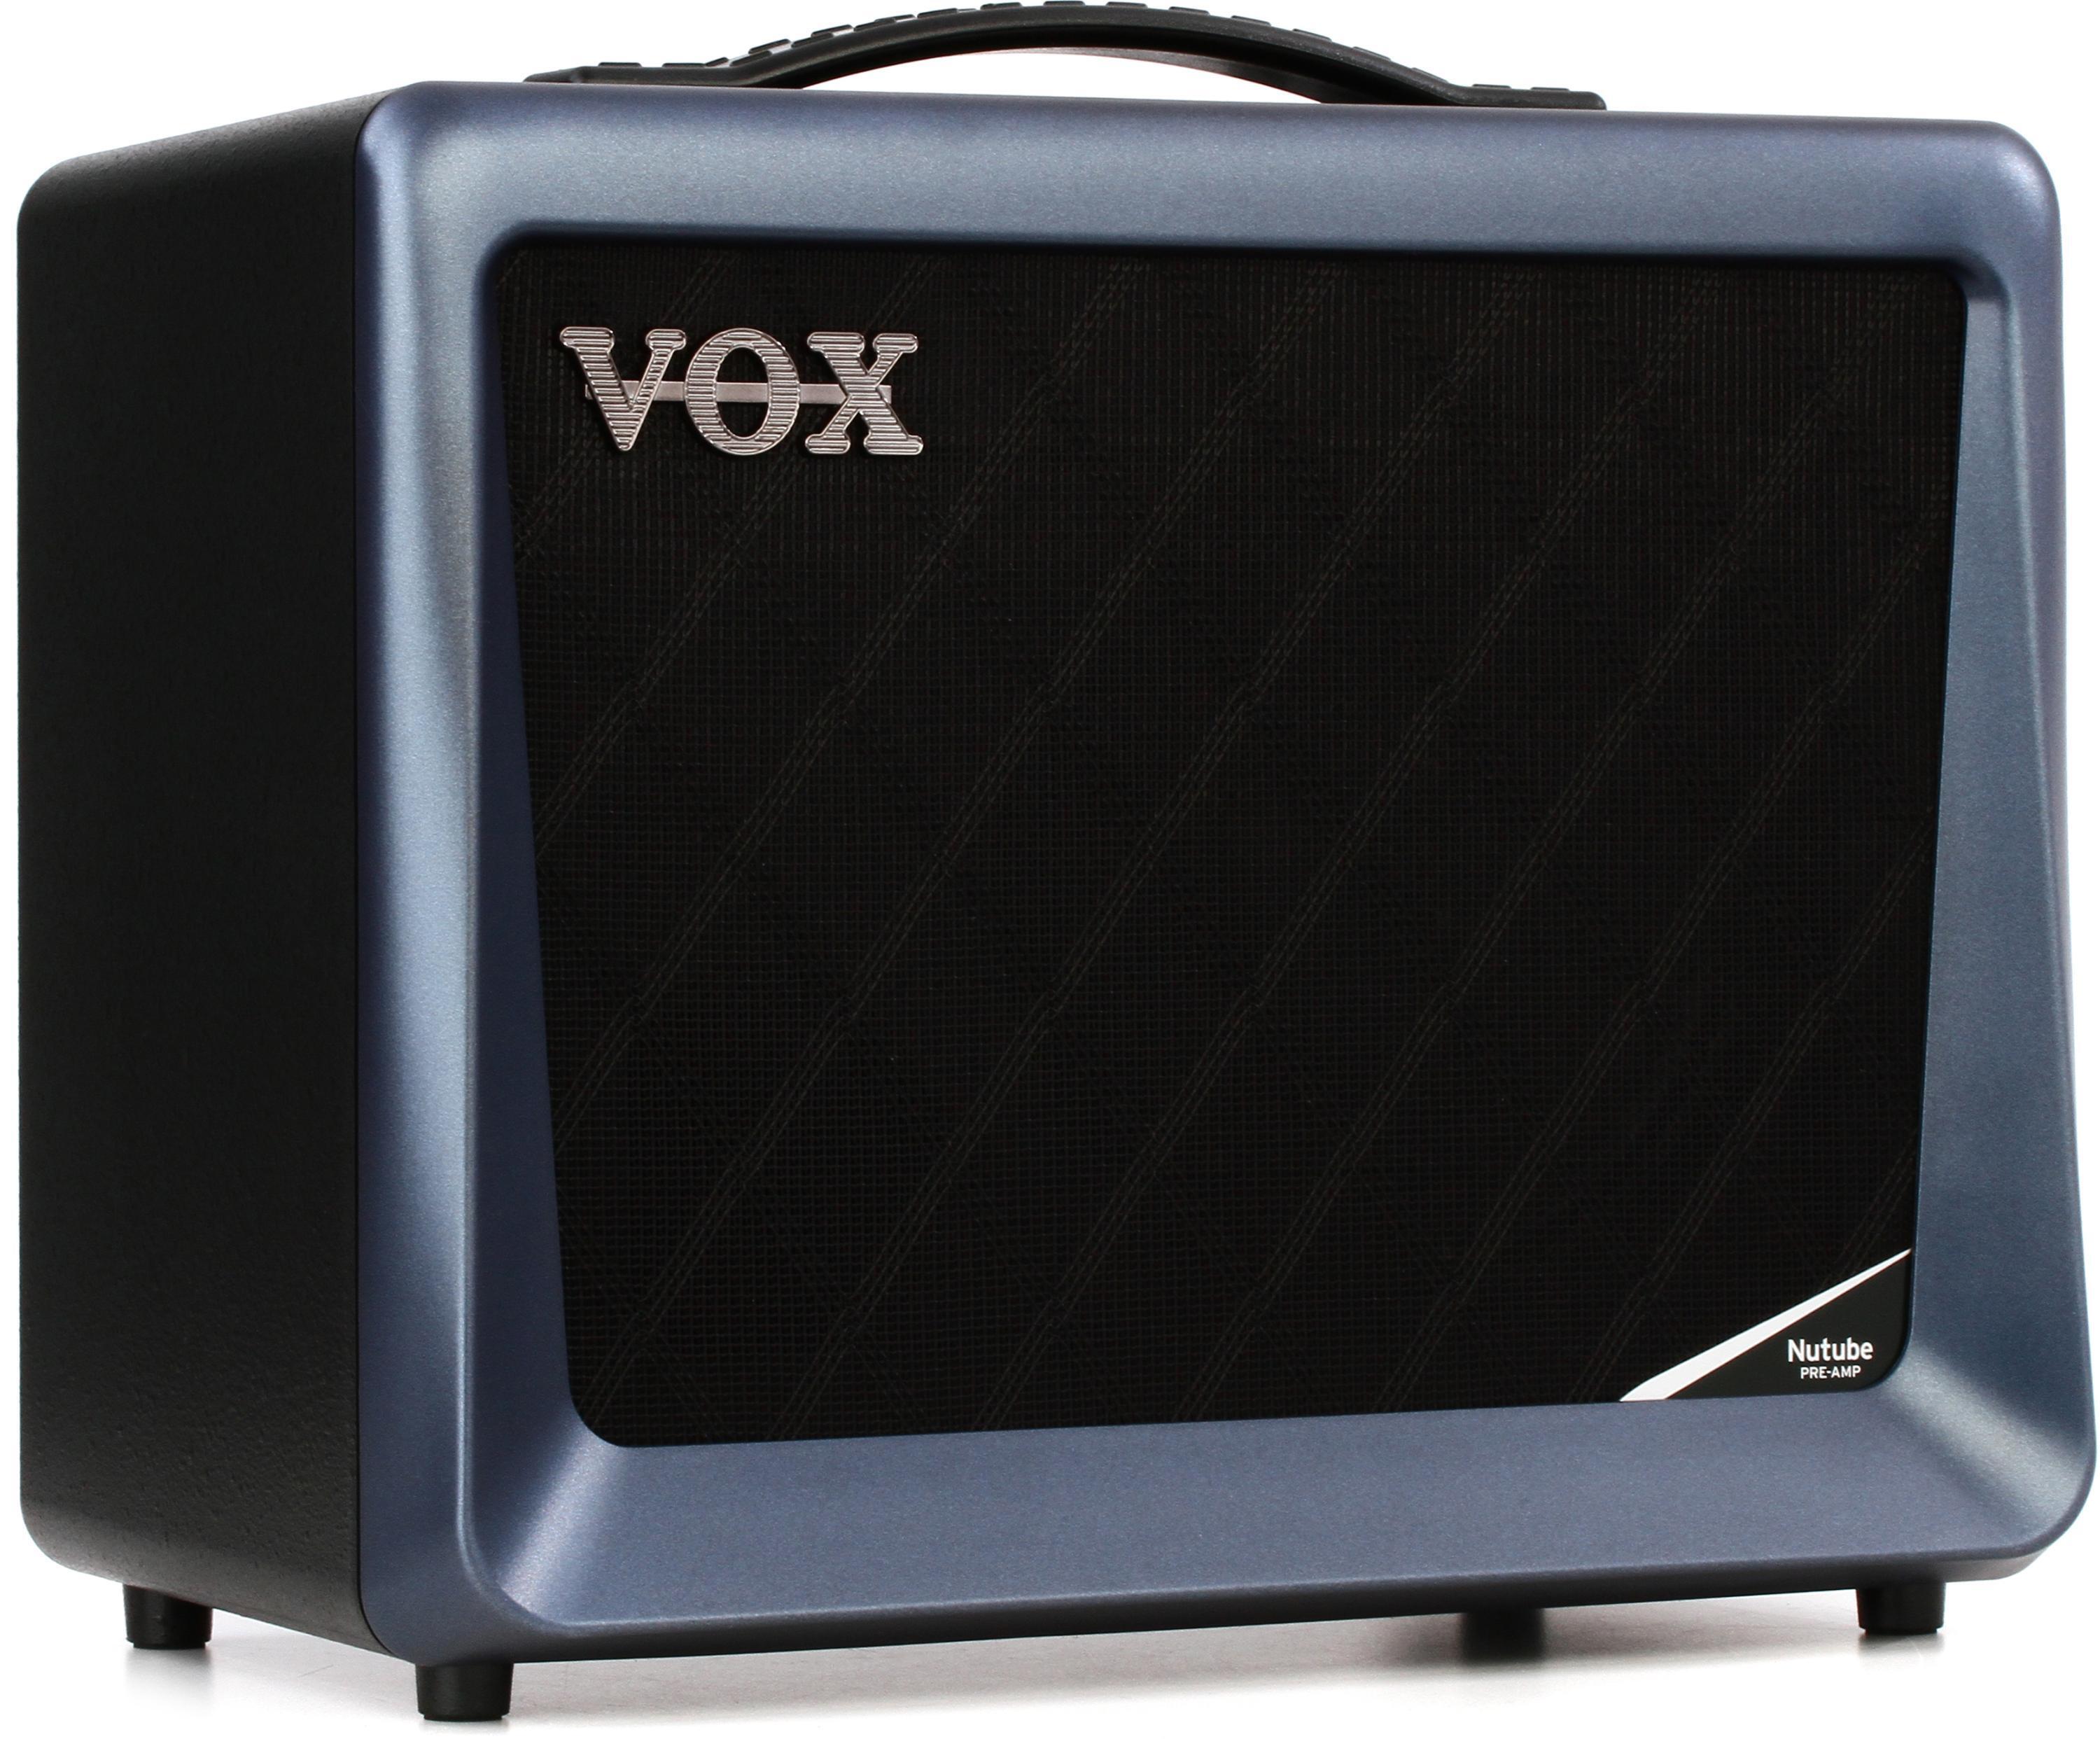 Vox VX50 GTV 1x8